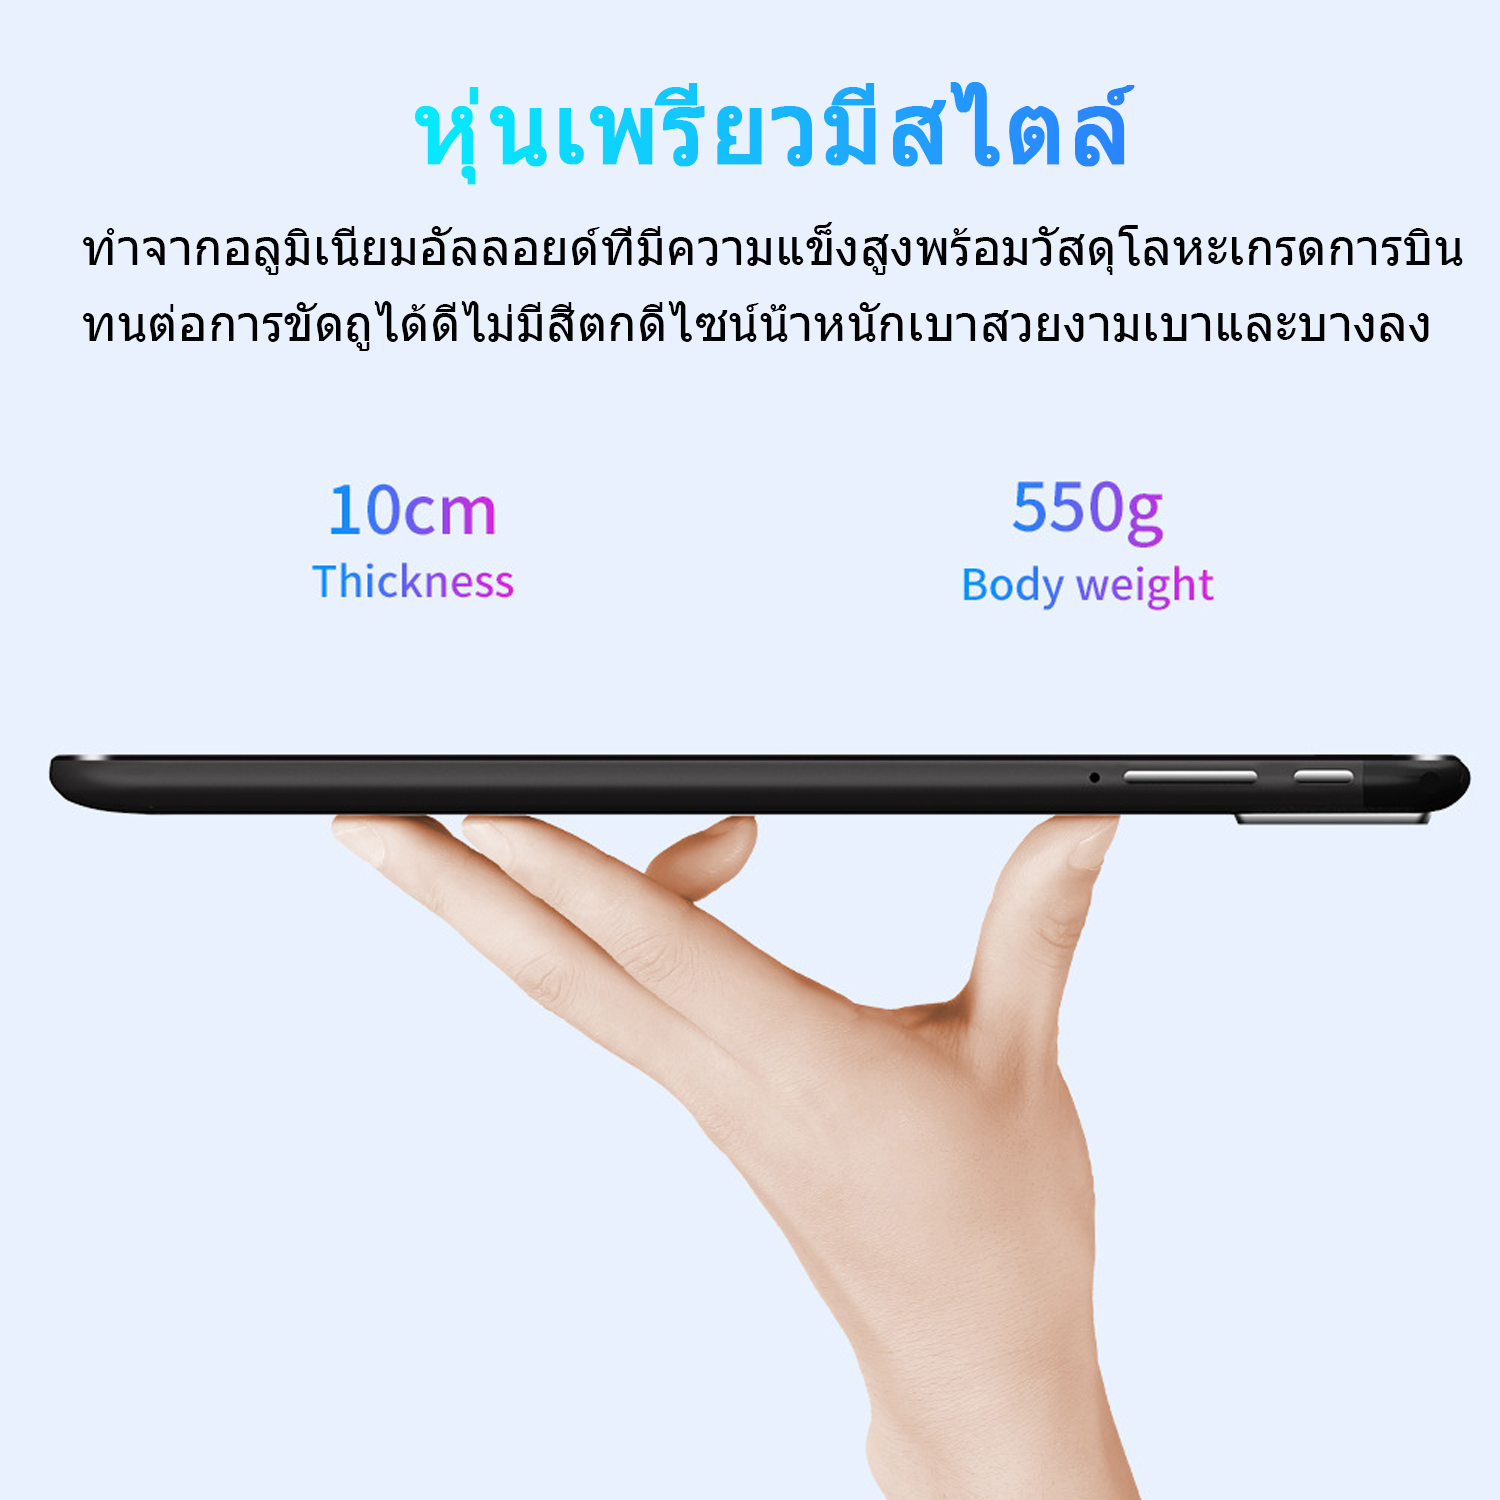 คำอธิบายเพิ่มเติมเกี่ยวกับ （ลดเคลียร์สต๊อก）Realmi Thailand Store❗ แท็บเล็ตขนาดหน้าจอ10.1 นิ้ว (8GB+128GB) แท็บเล็ตถูกๆ1000 แทบเล็ตของแท้ 2021tablet pc แท็บเล็ตระบบ Android9.0 แท็บเล็ตถูกๆ2021 มีการรับประกันจากผู้ขาย อัพเกรดชิป ลำโพงคู่ ที่มีความละเอียดถึง รับประกัน1ปี❗ส่งจากไทย